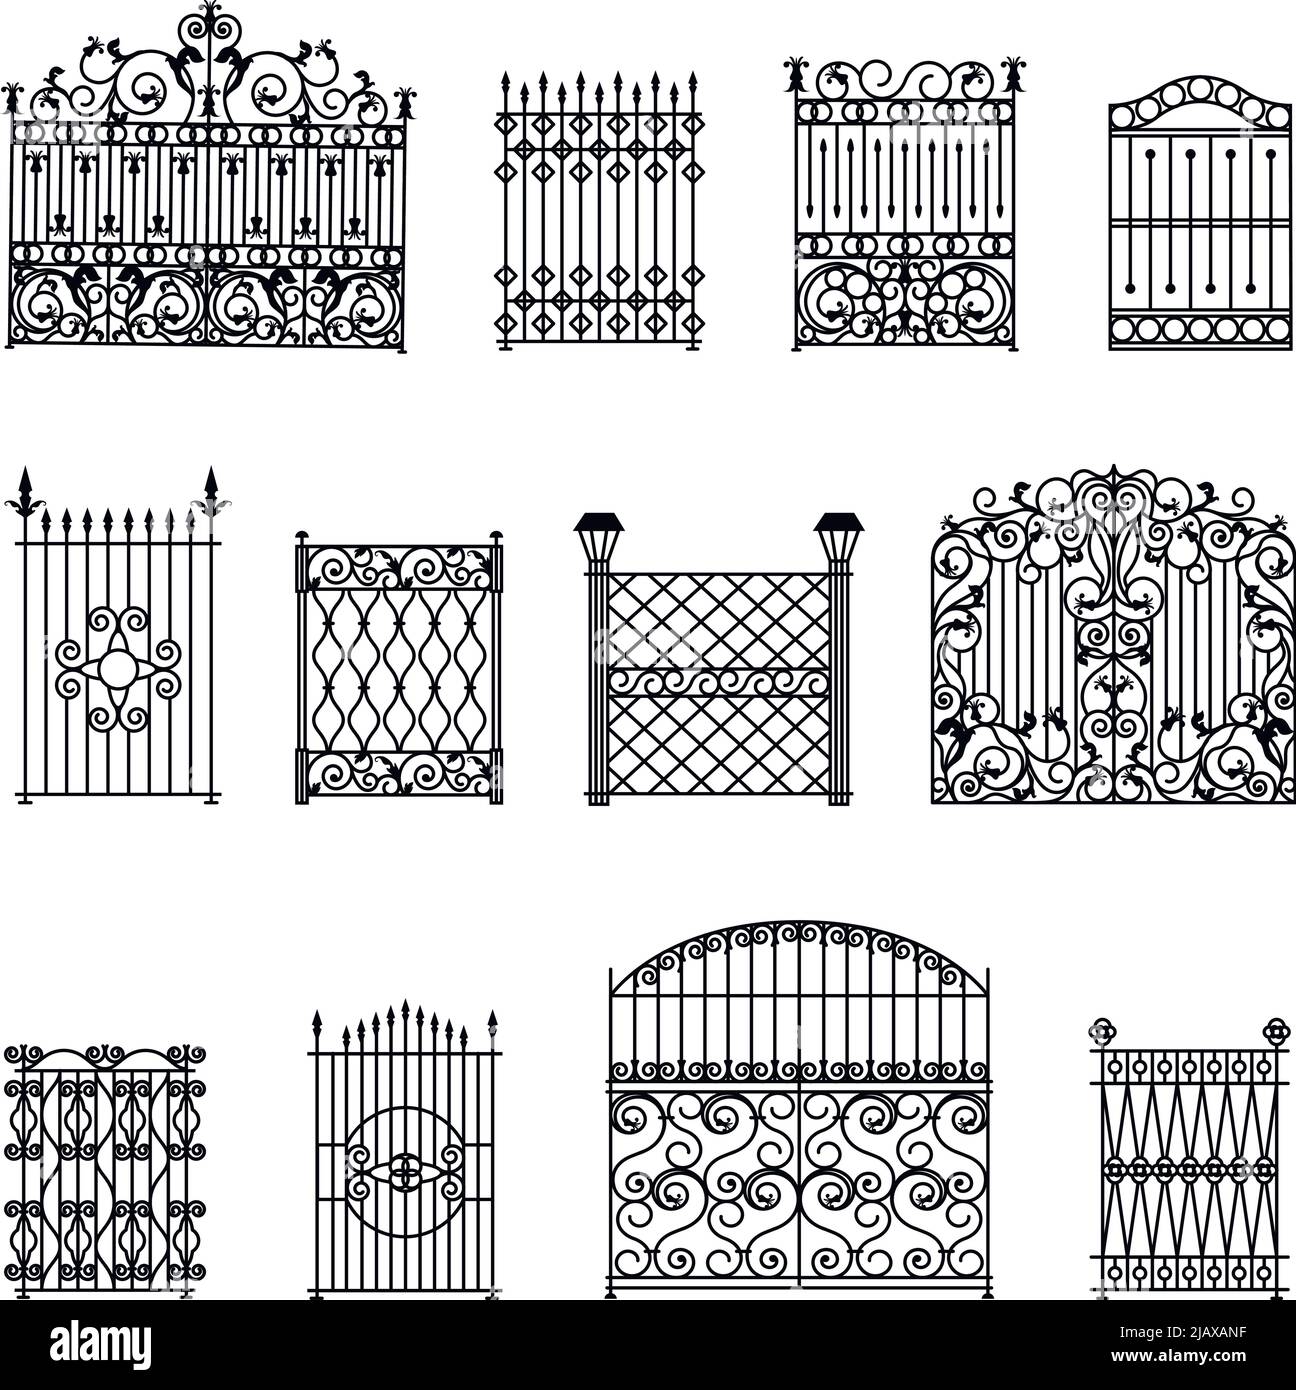 Jeu de clôtures décoratives blanches noires avec portails illustration vectorielle isolée plate Illustration de Vecteur